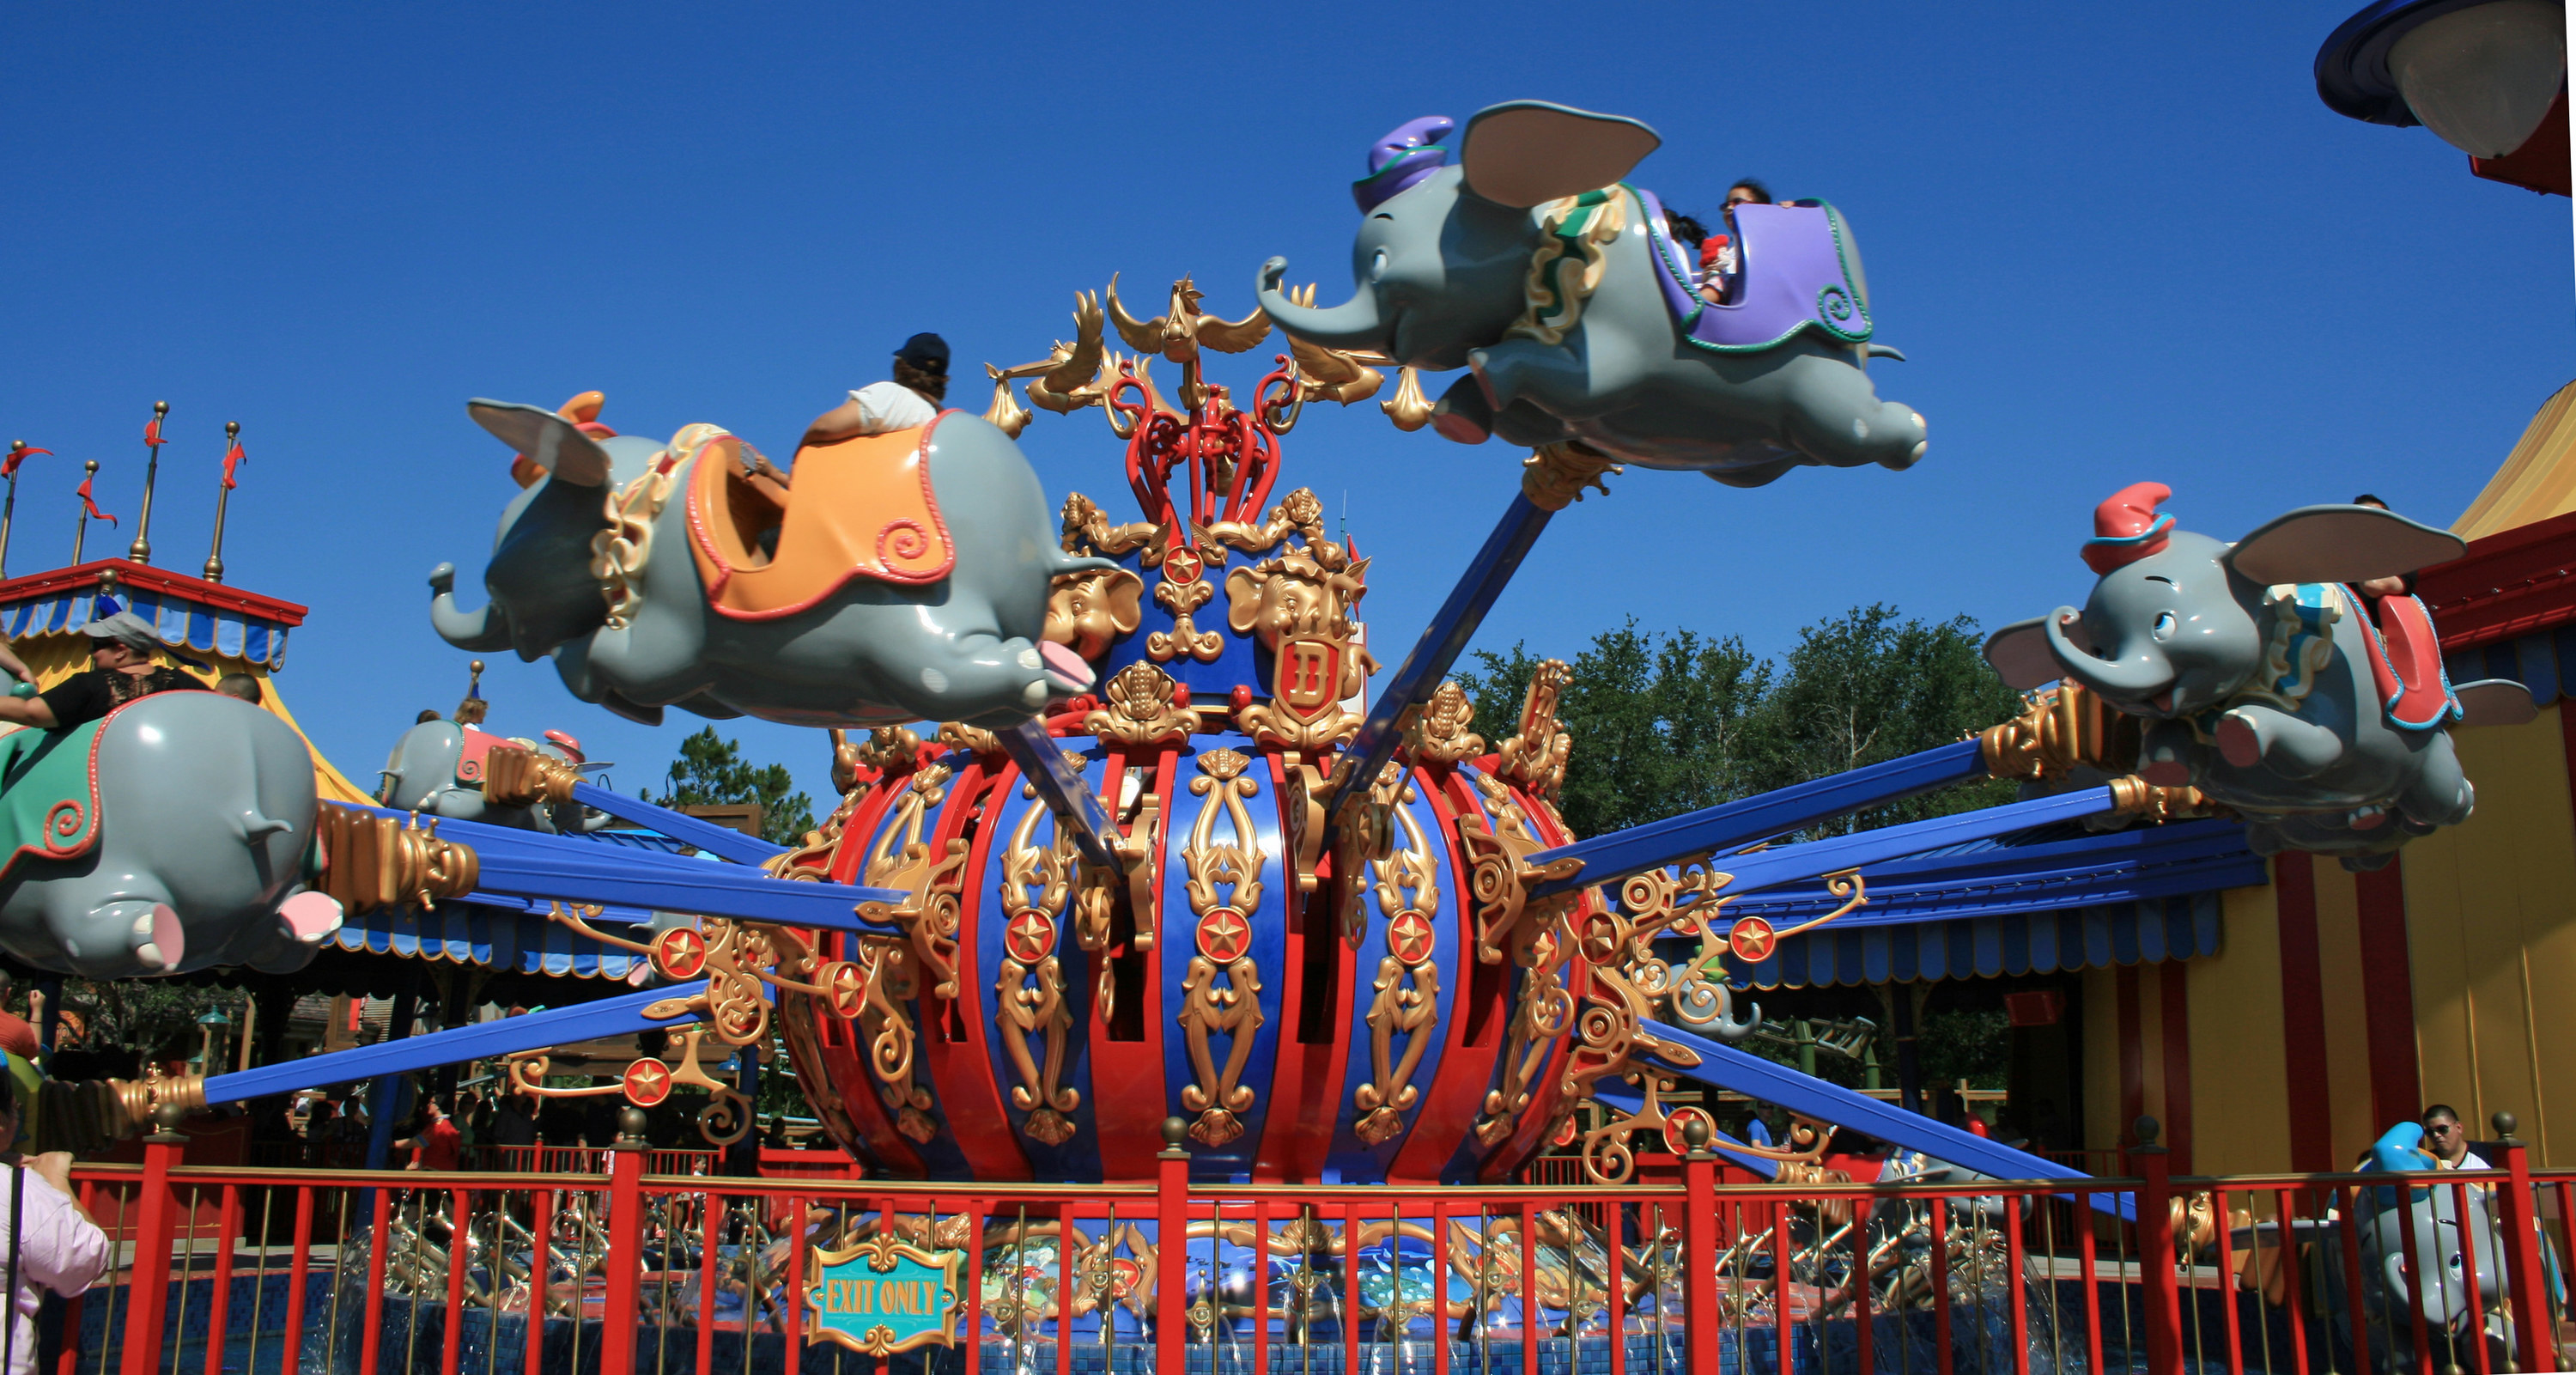 Dumbo the flying elephant ride